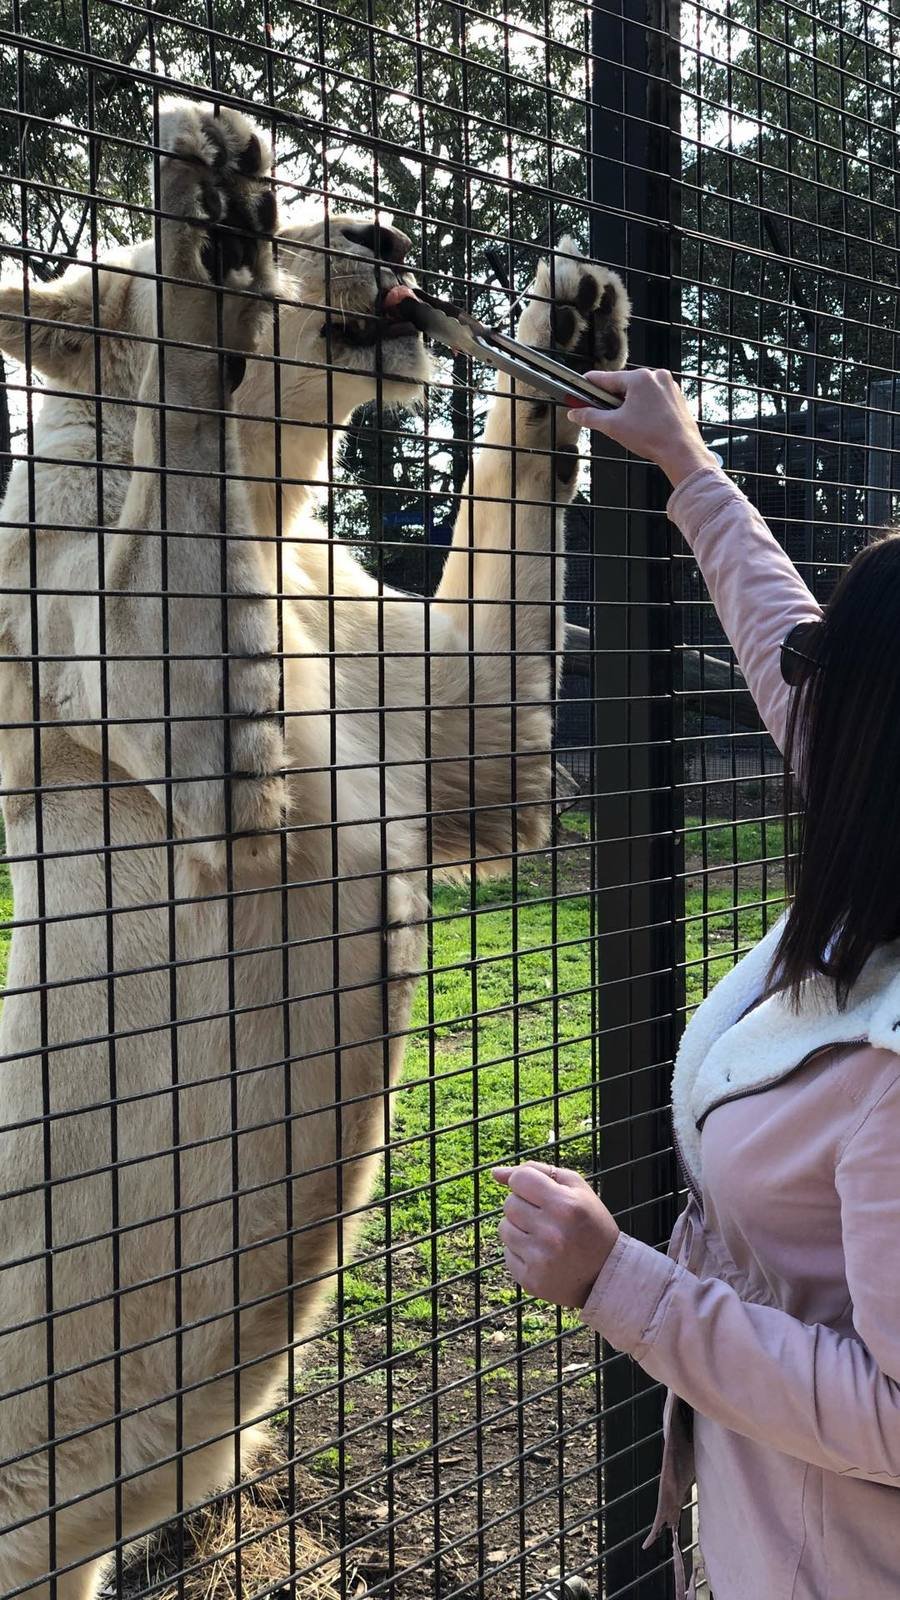 Ošetřovatelka ze zoo skončila v kritickém stavu: Brutálně ji napadli lvi.